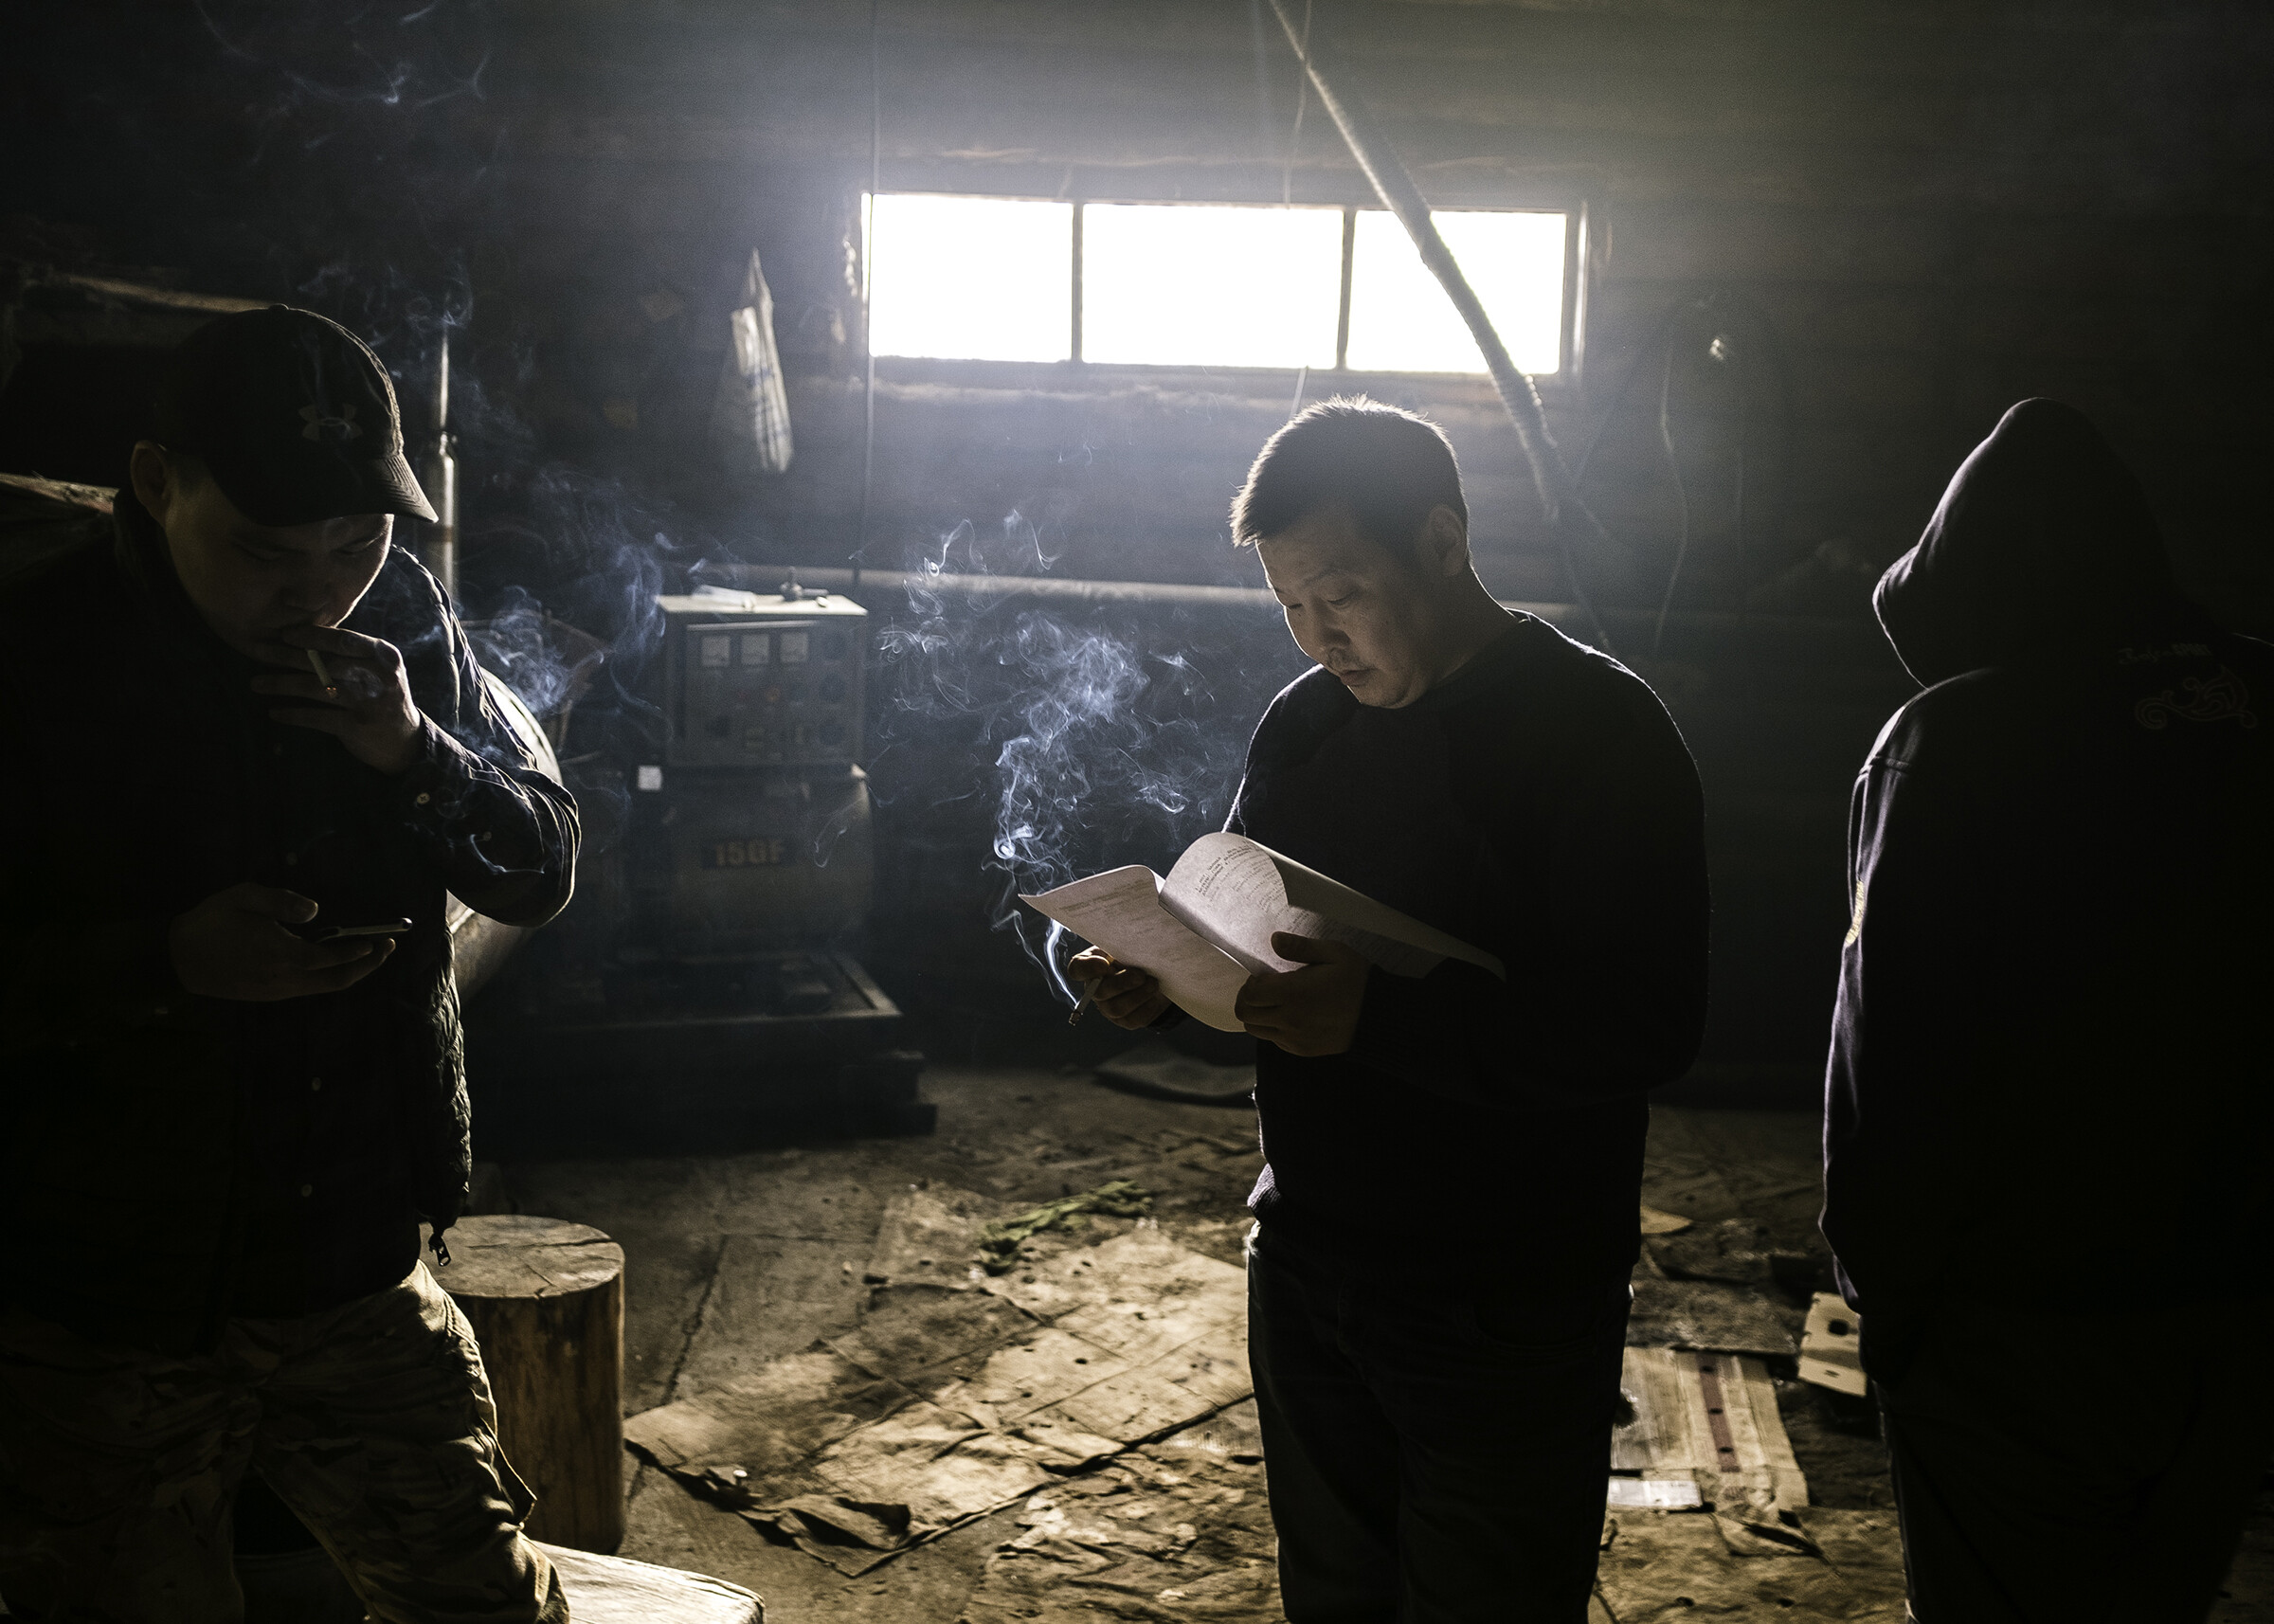 Актёры, играющие роли дальнобойщиков в драме «Чёрный снег», репетируют в курилке придорожного кафе, где проходит съёмка. Фотограф Алексей Васильев